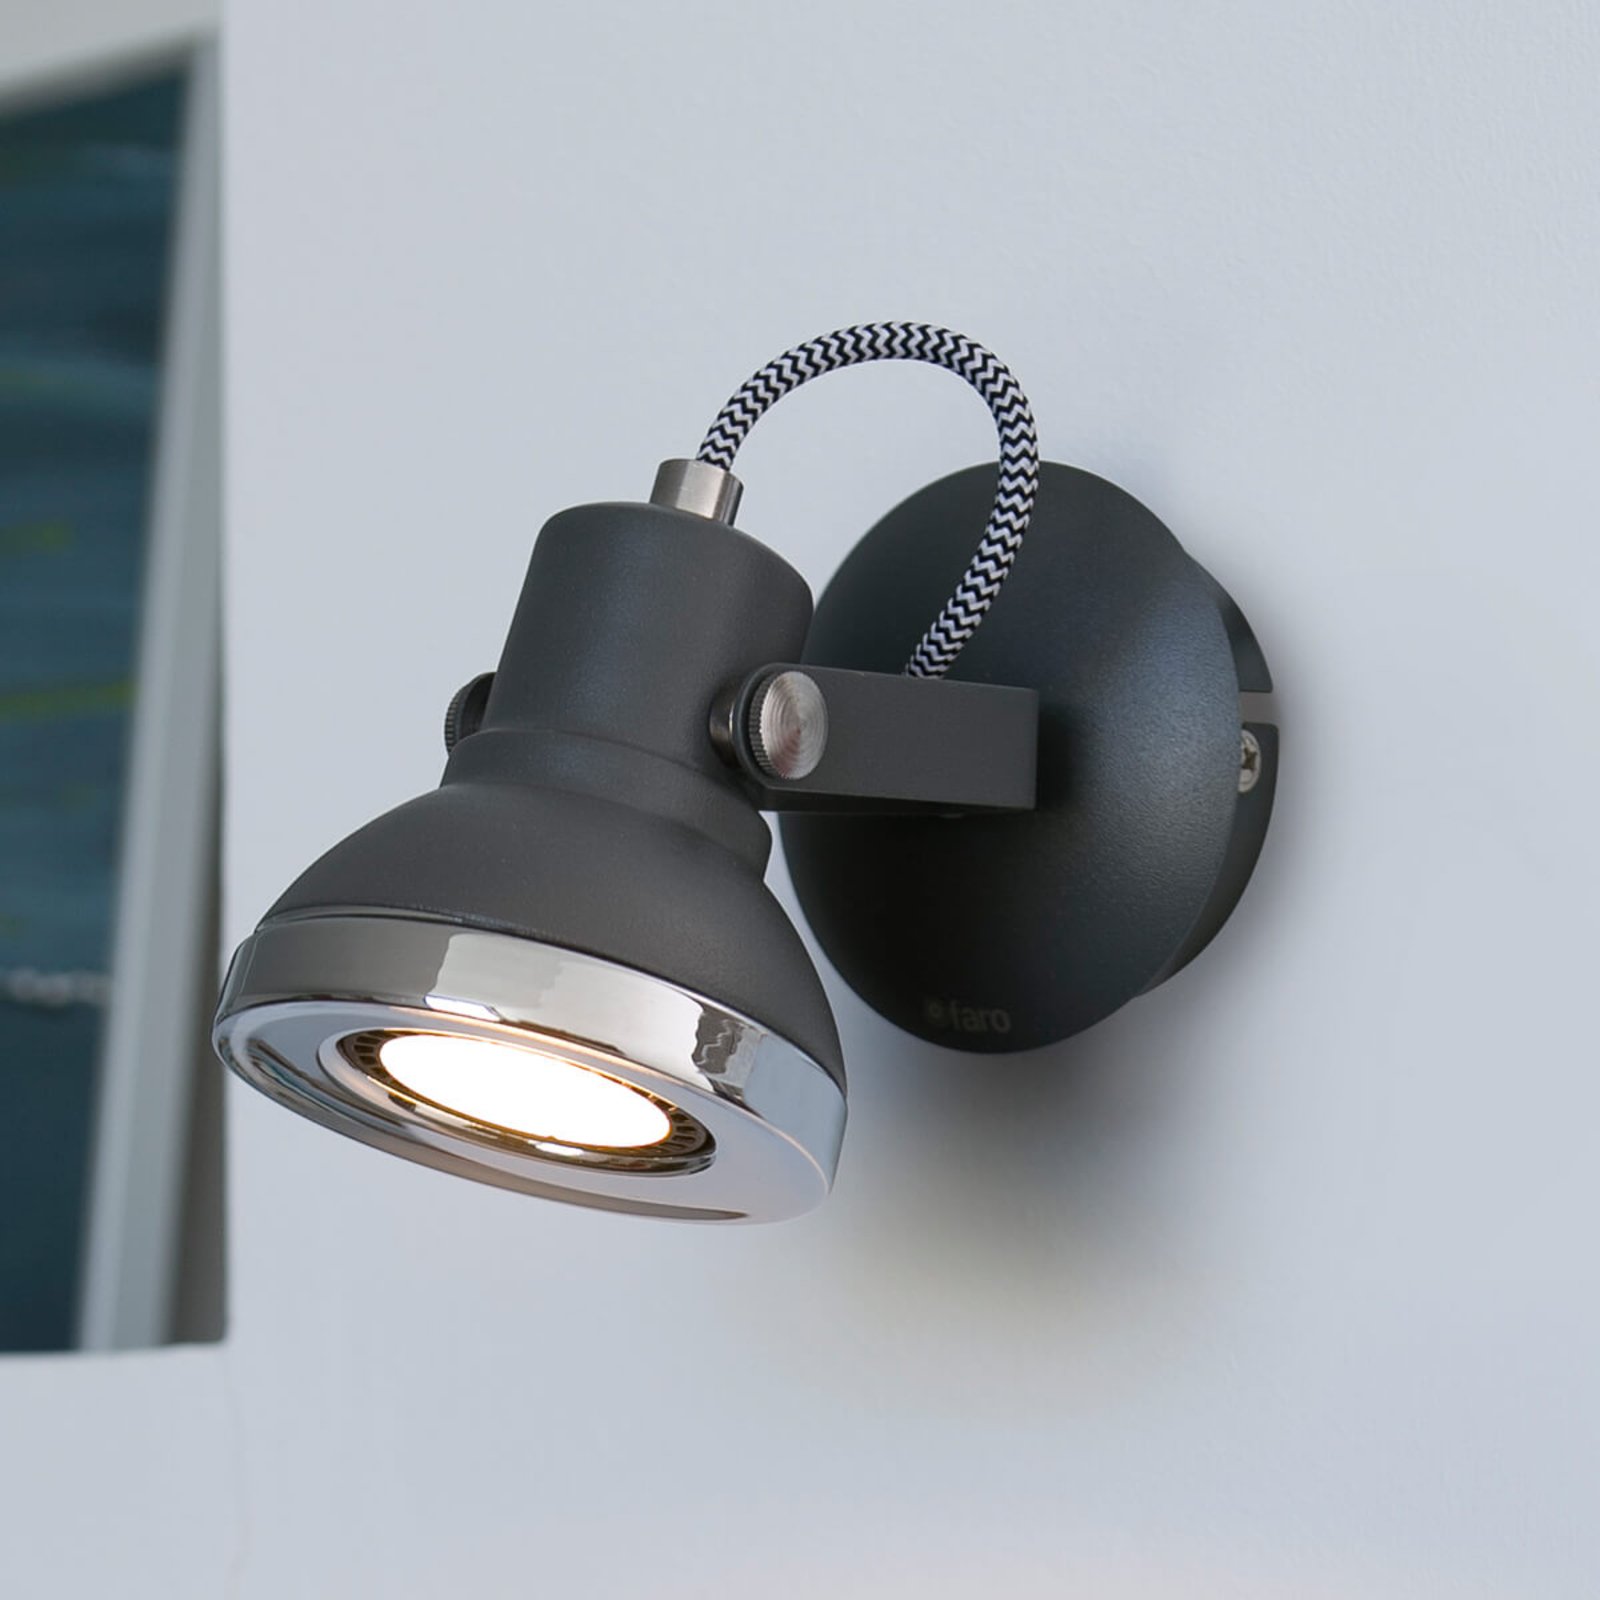 Ring - προβολέας τοίχου LED μονής φλόγας σε σκούρο γκρι χρώμα